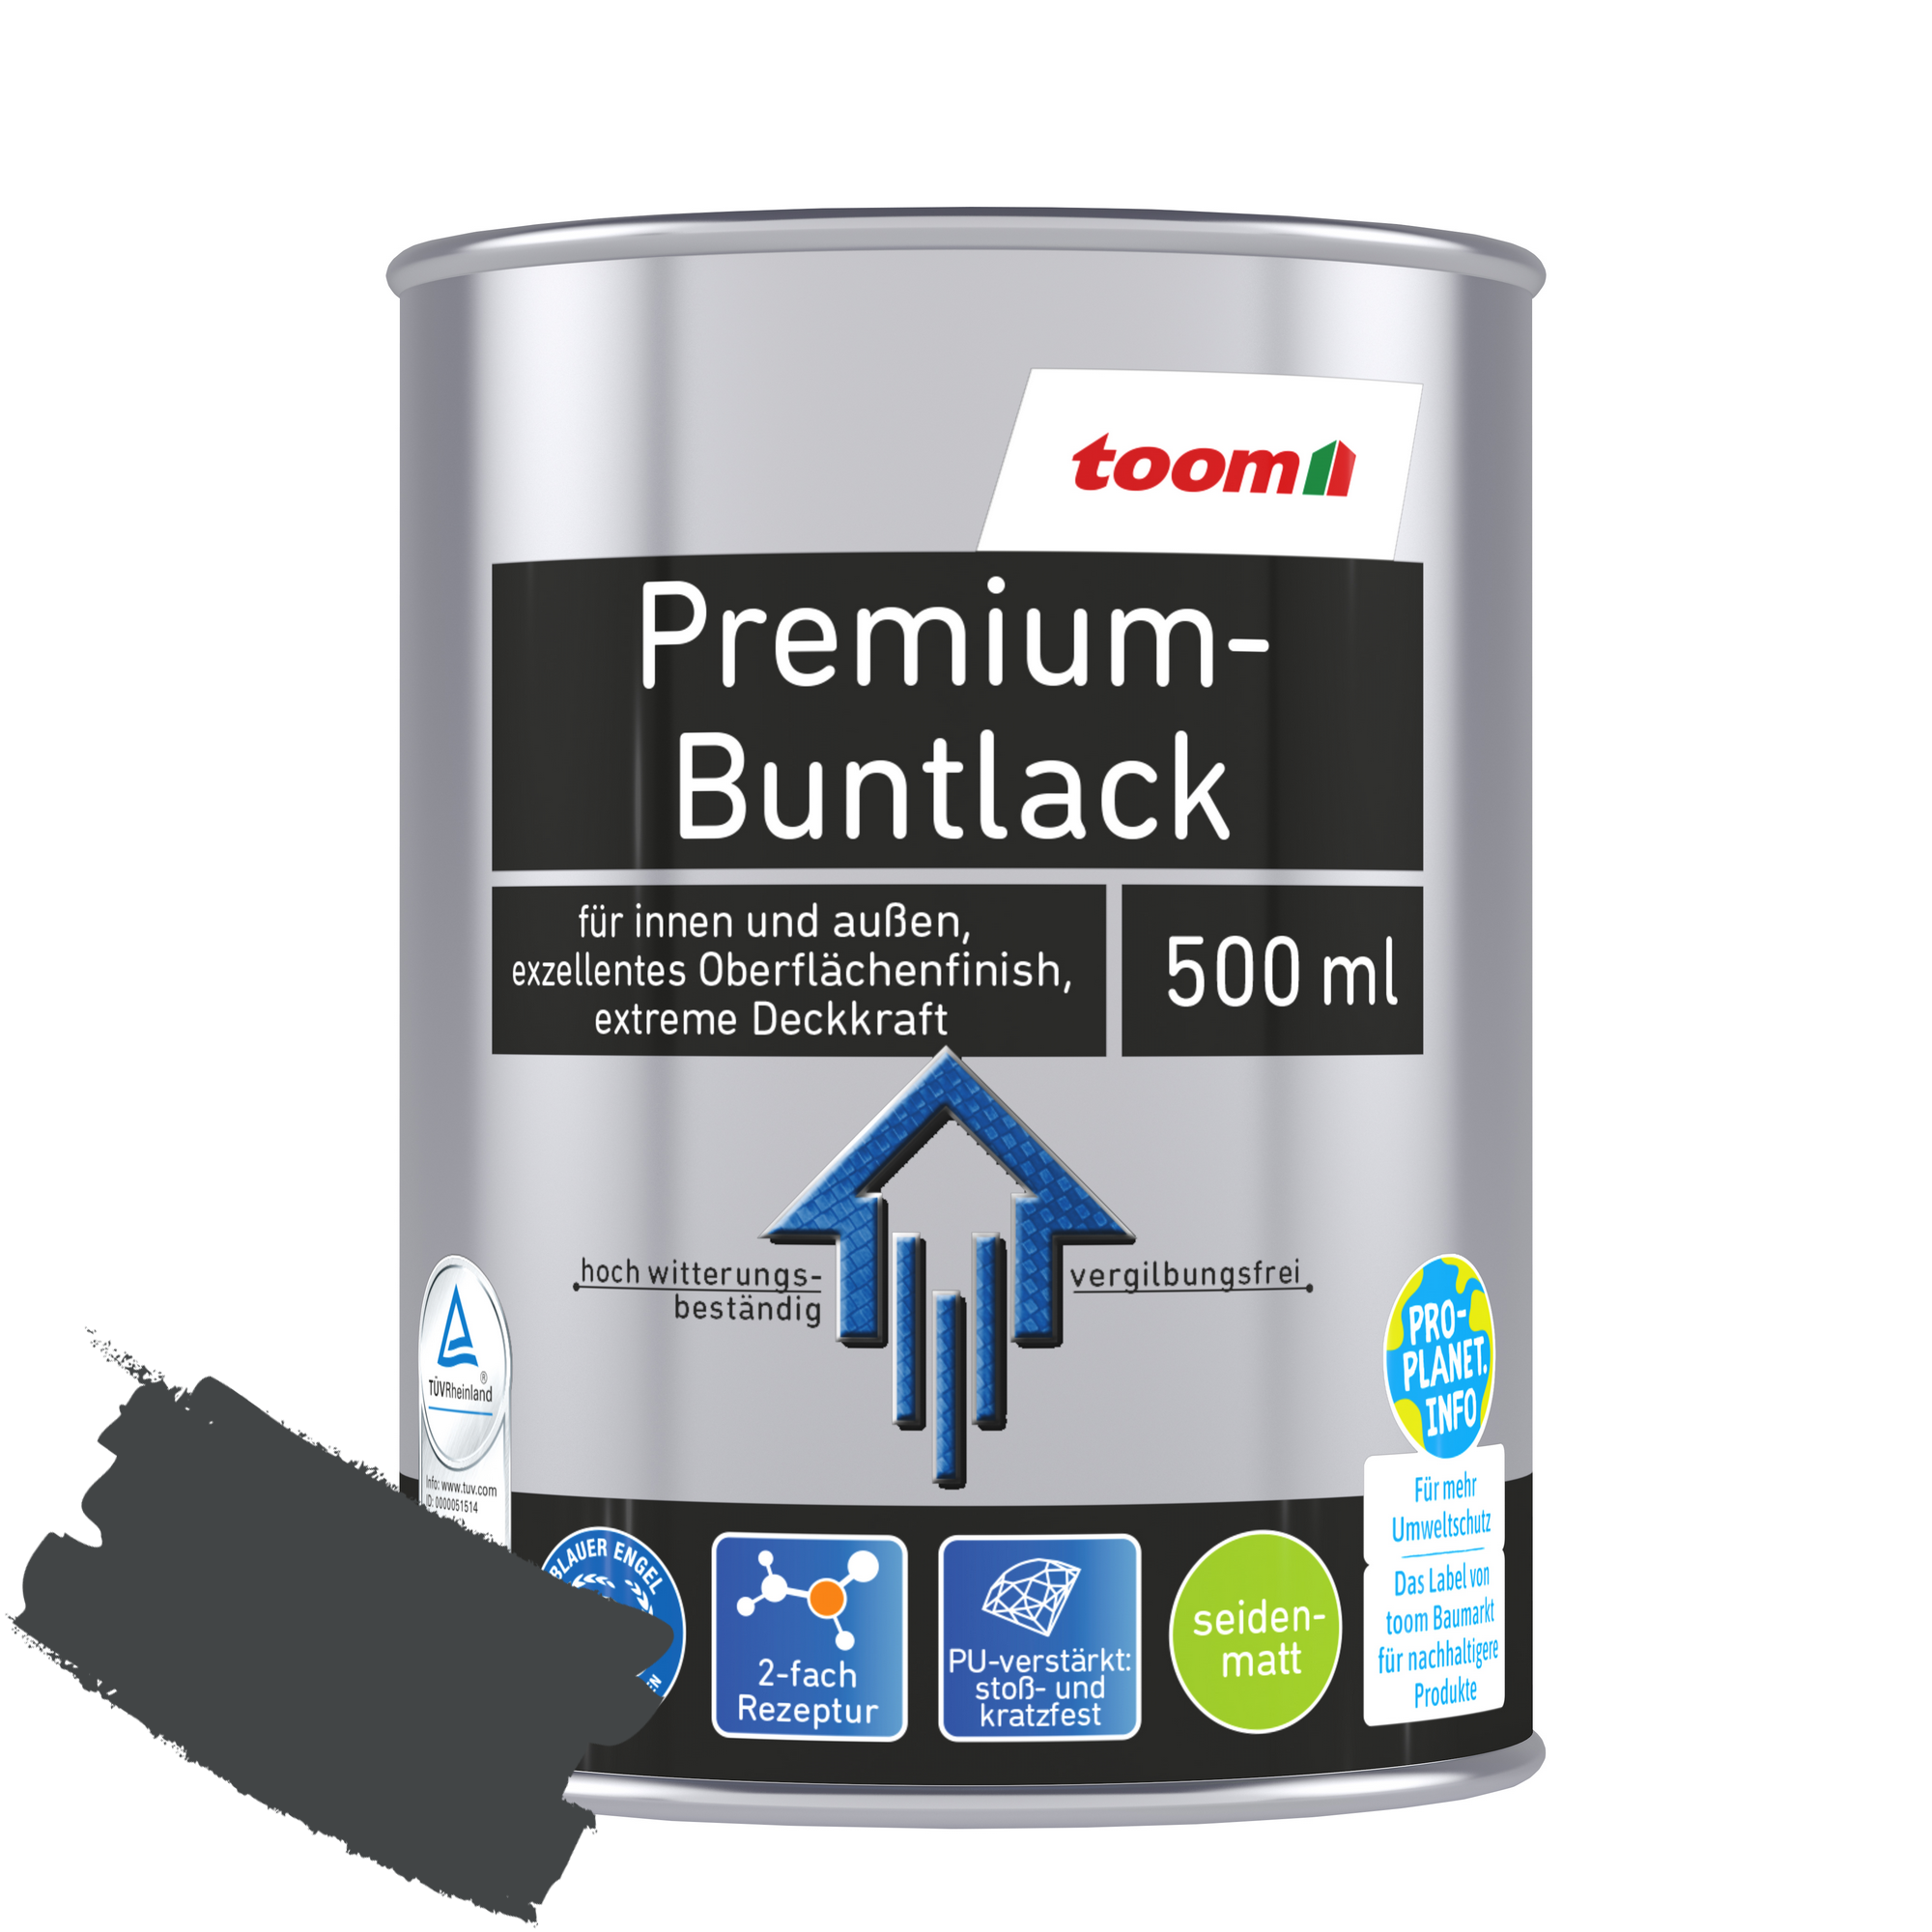 Premium-Buntlack grau seidenmatt 500 ml + product picture